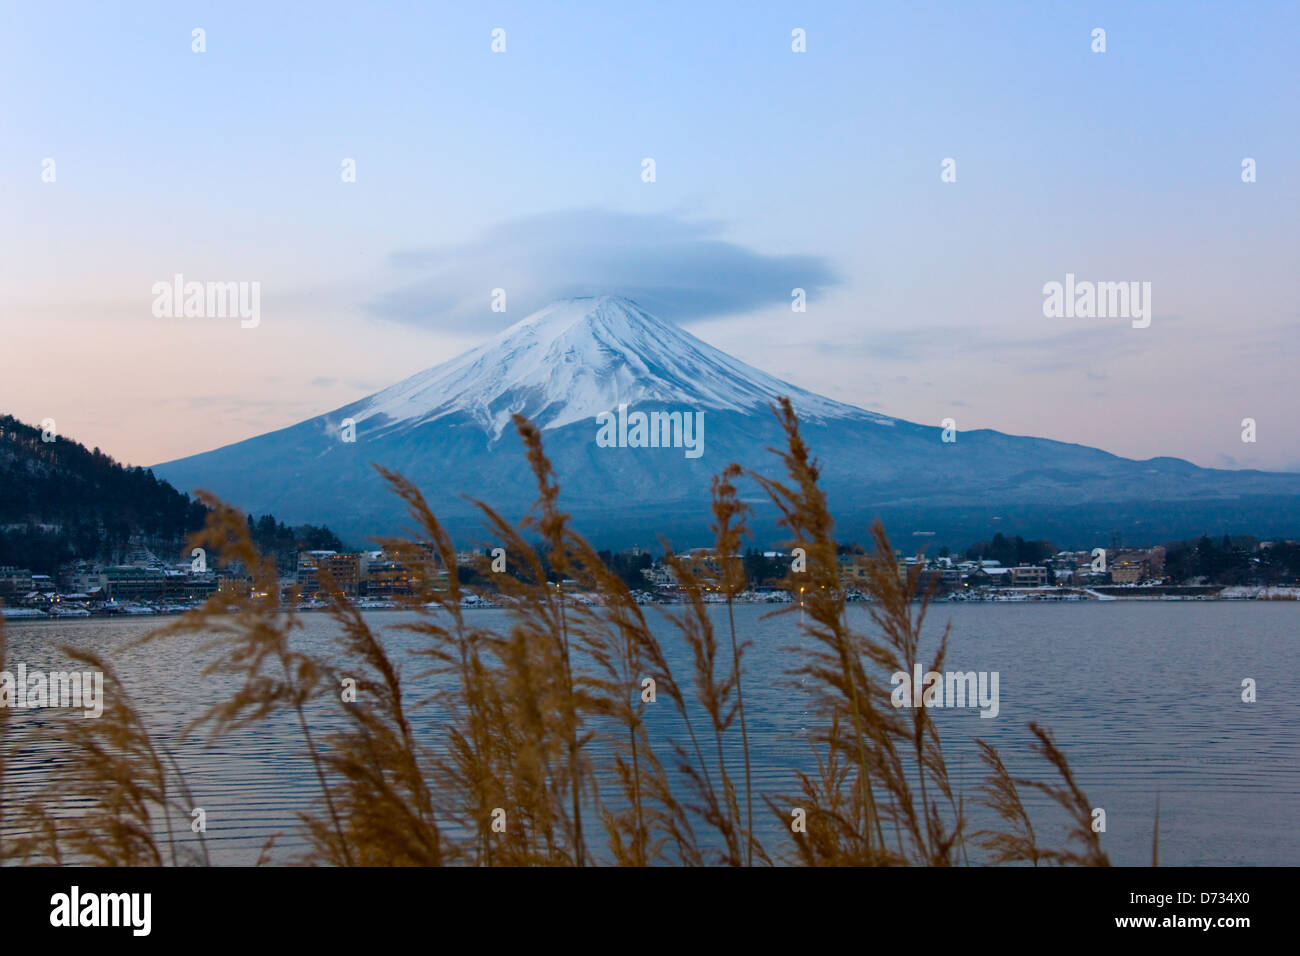 Mt. Fuji with Kawaguchiko Lake, Japan Stock Photo